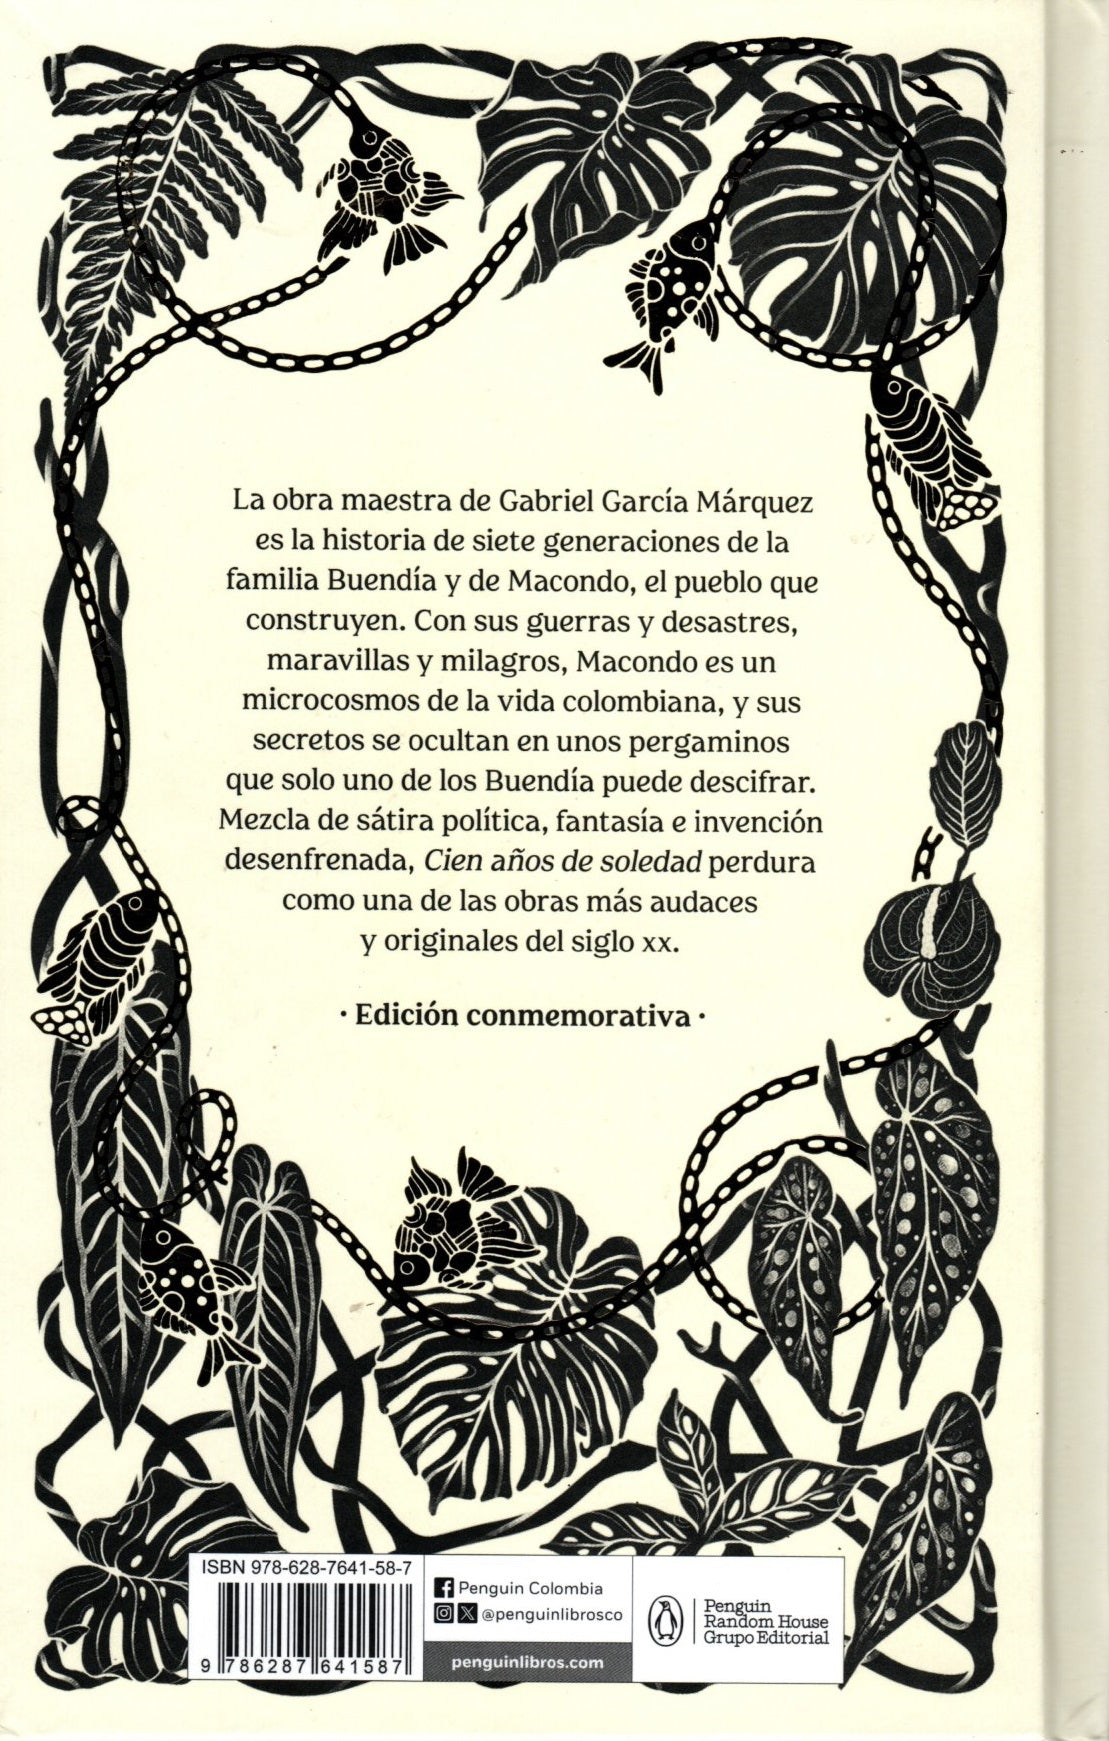 Libro Gabriel García Márquez - Cien años de soledad (Edición aniversario)